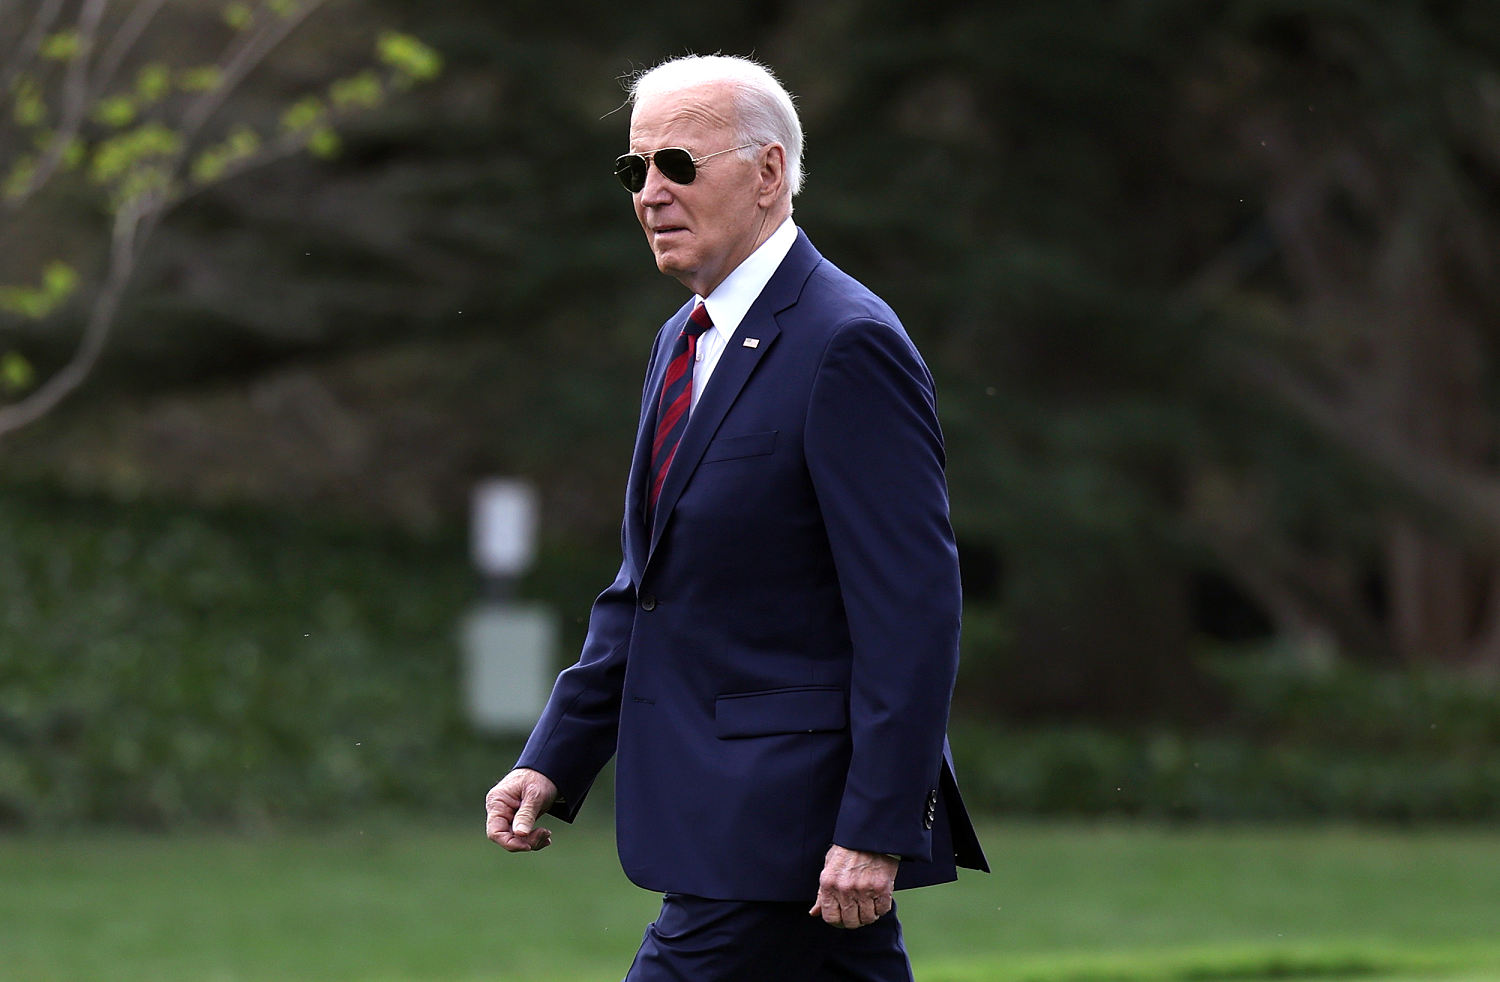 Biden plans to visit Baltimore next week after devastating bridge collapse